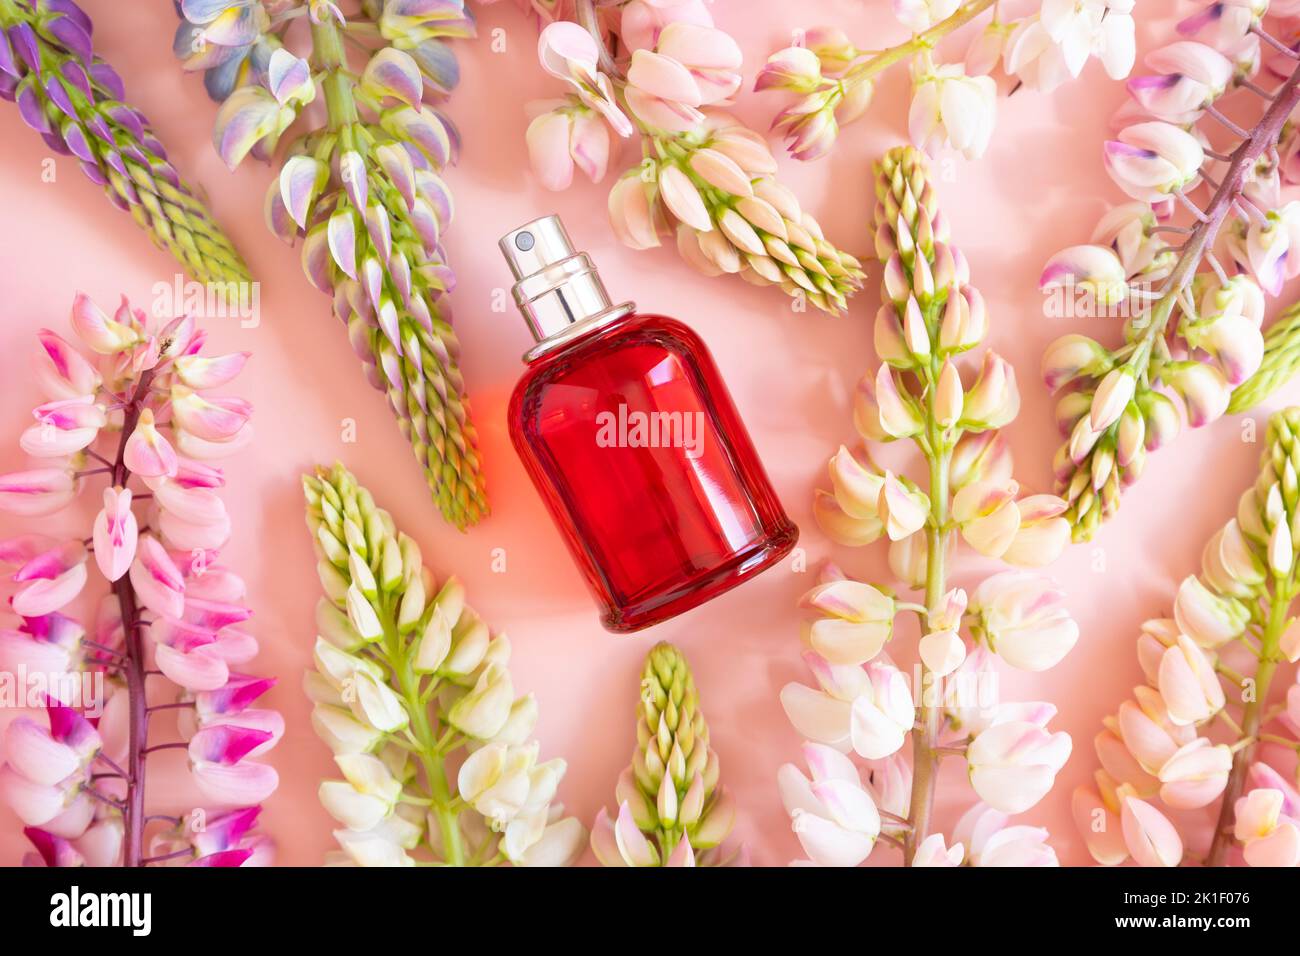 Bottiglia di profumo spray rosso e fiori di lupino rosa su sfondo rosa. Vista frontale dall'alto, giacitura estiva, mockup. Foto Stock